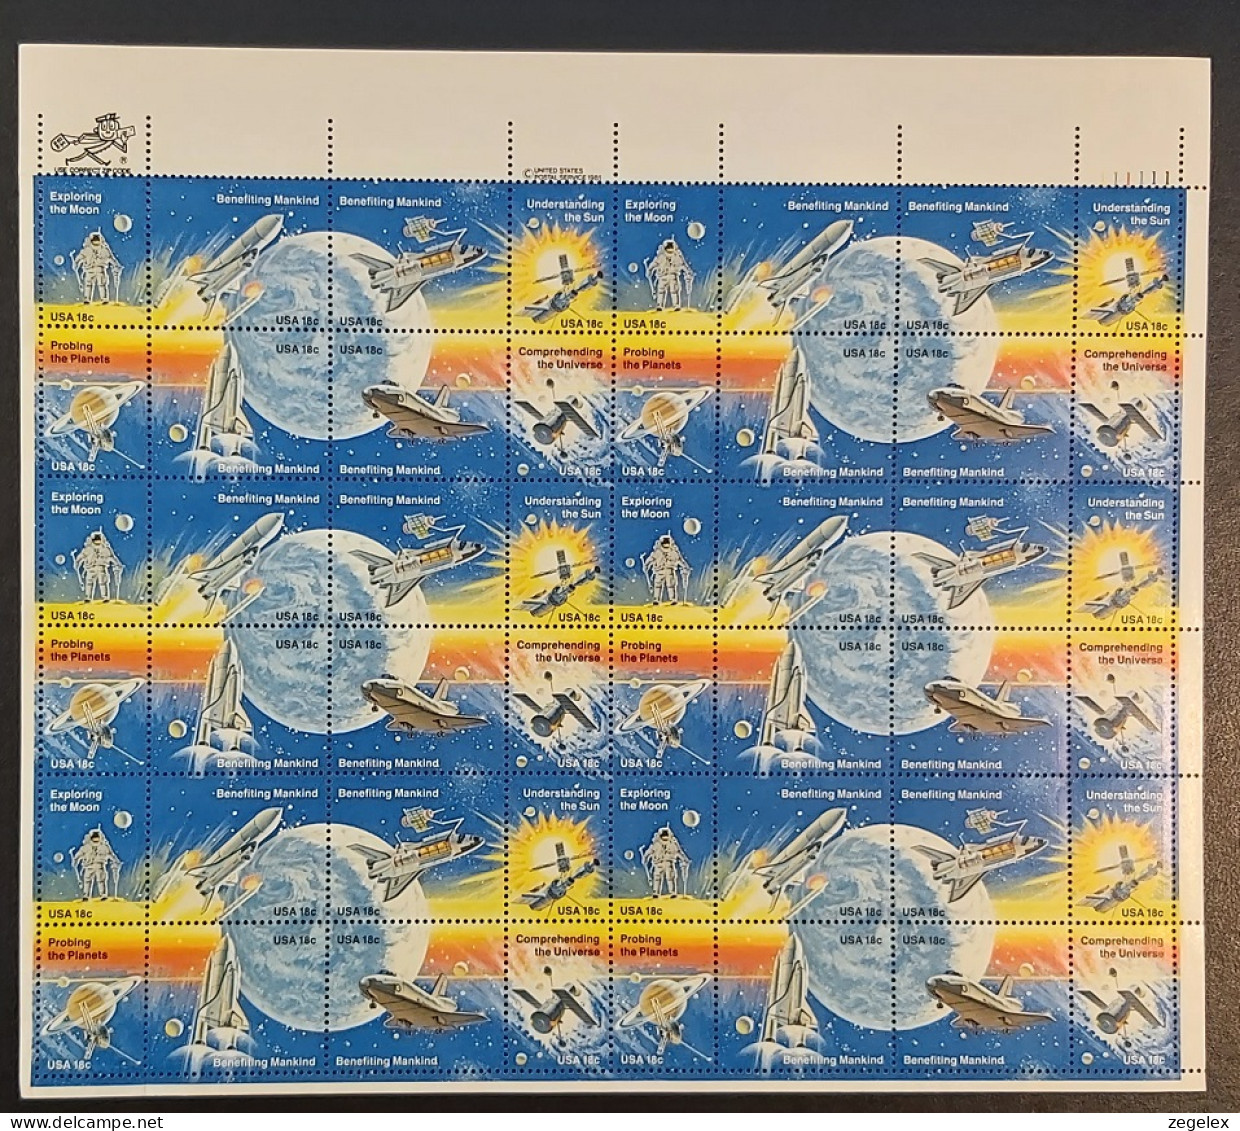 USA 1981 Space Achievement Issue - 6 X Block Of 8 Stamps MNH** Scott No. 1912-1919a - Ganze Bögen